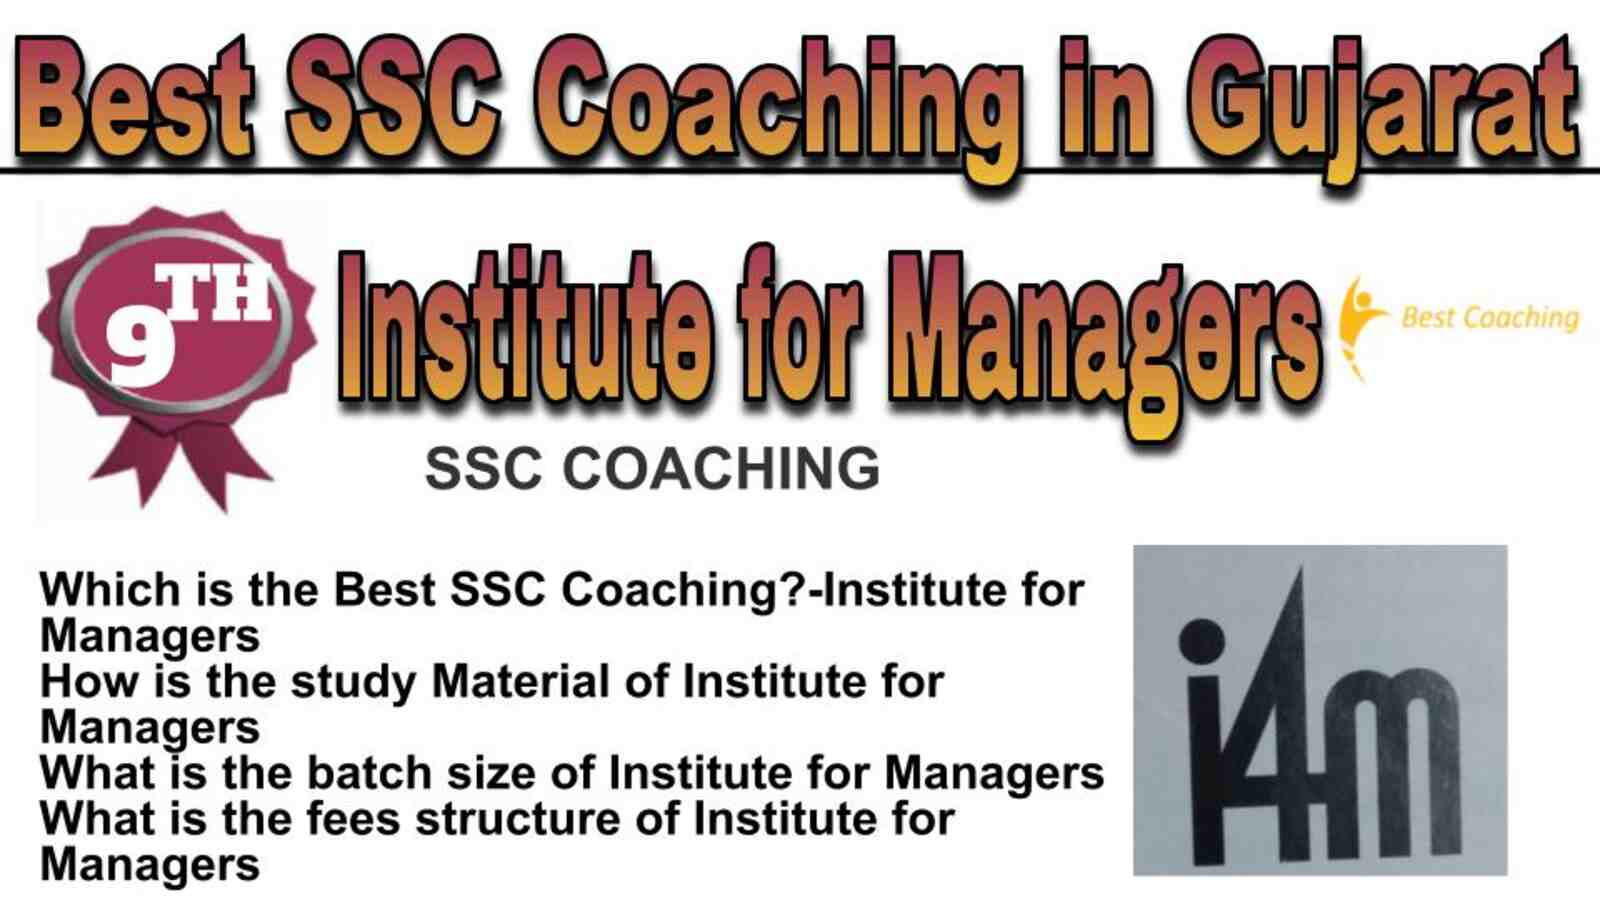 Rank 9 best SSC coaching in Gujarat